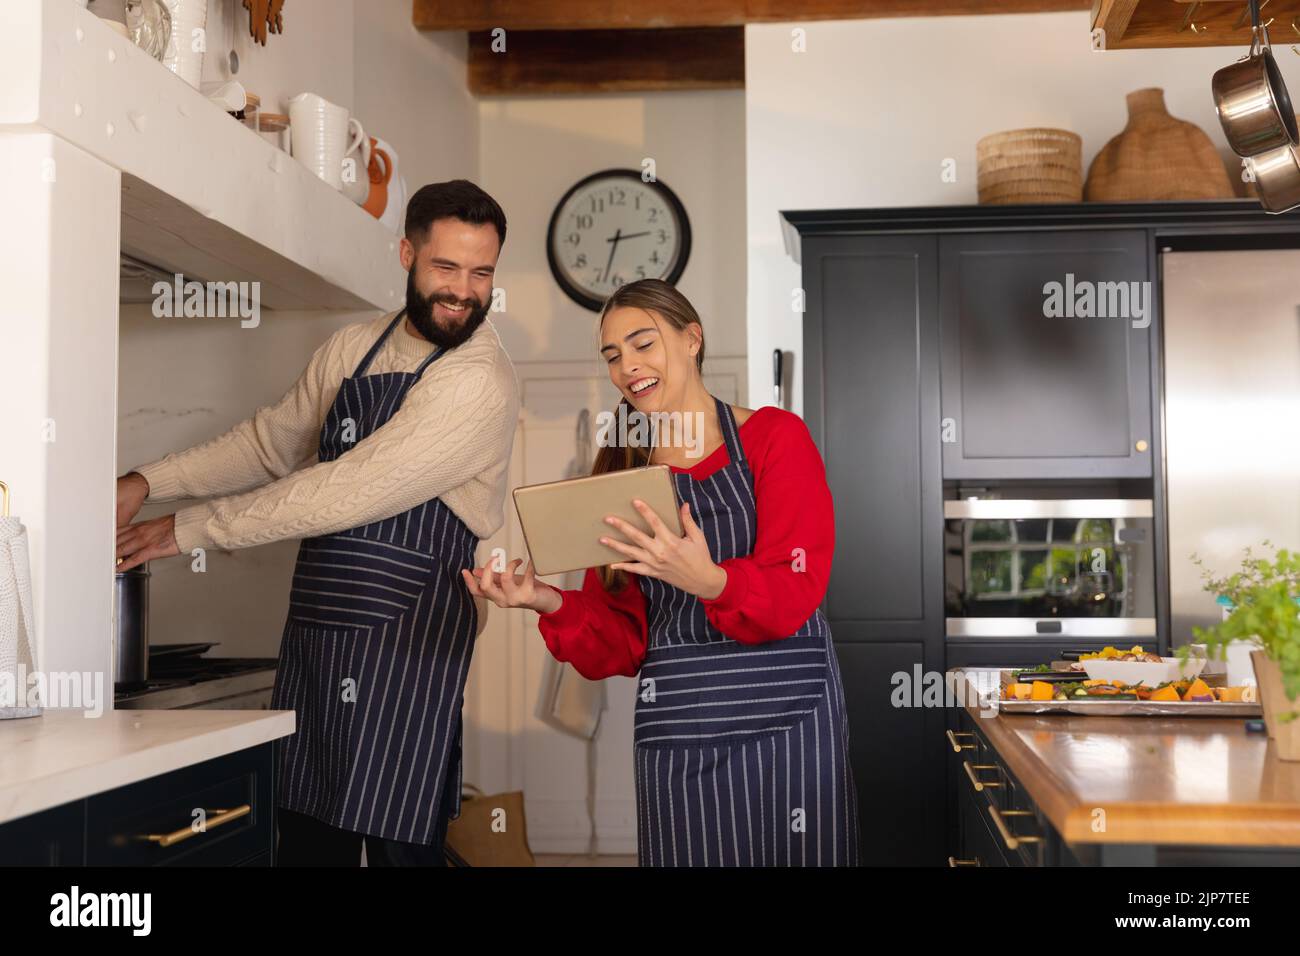 Glückliches kaukasisches Paar, das in der Küche Essen zubereitet, lächelt und das Rezept auf einem Tablet anschaut Stockfoto